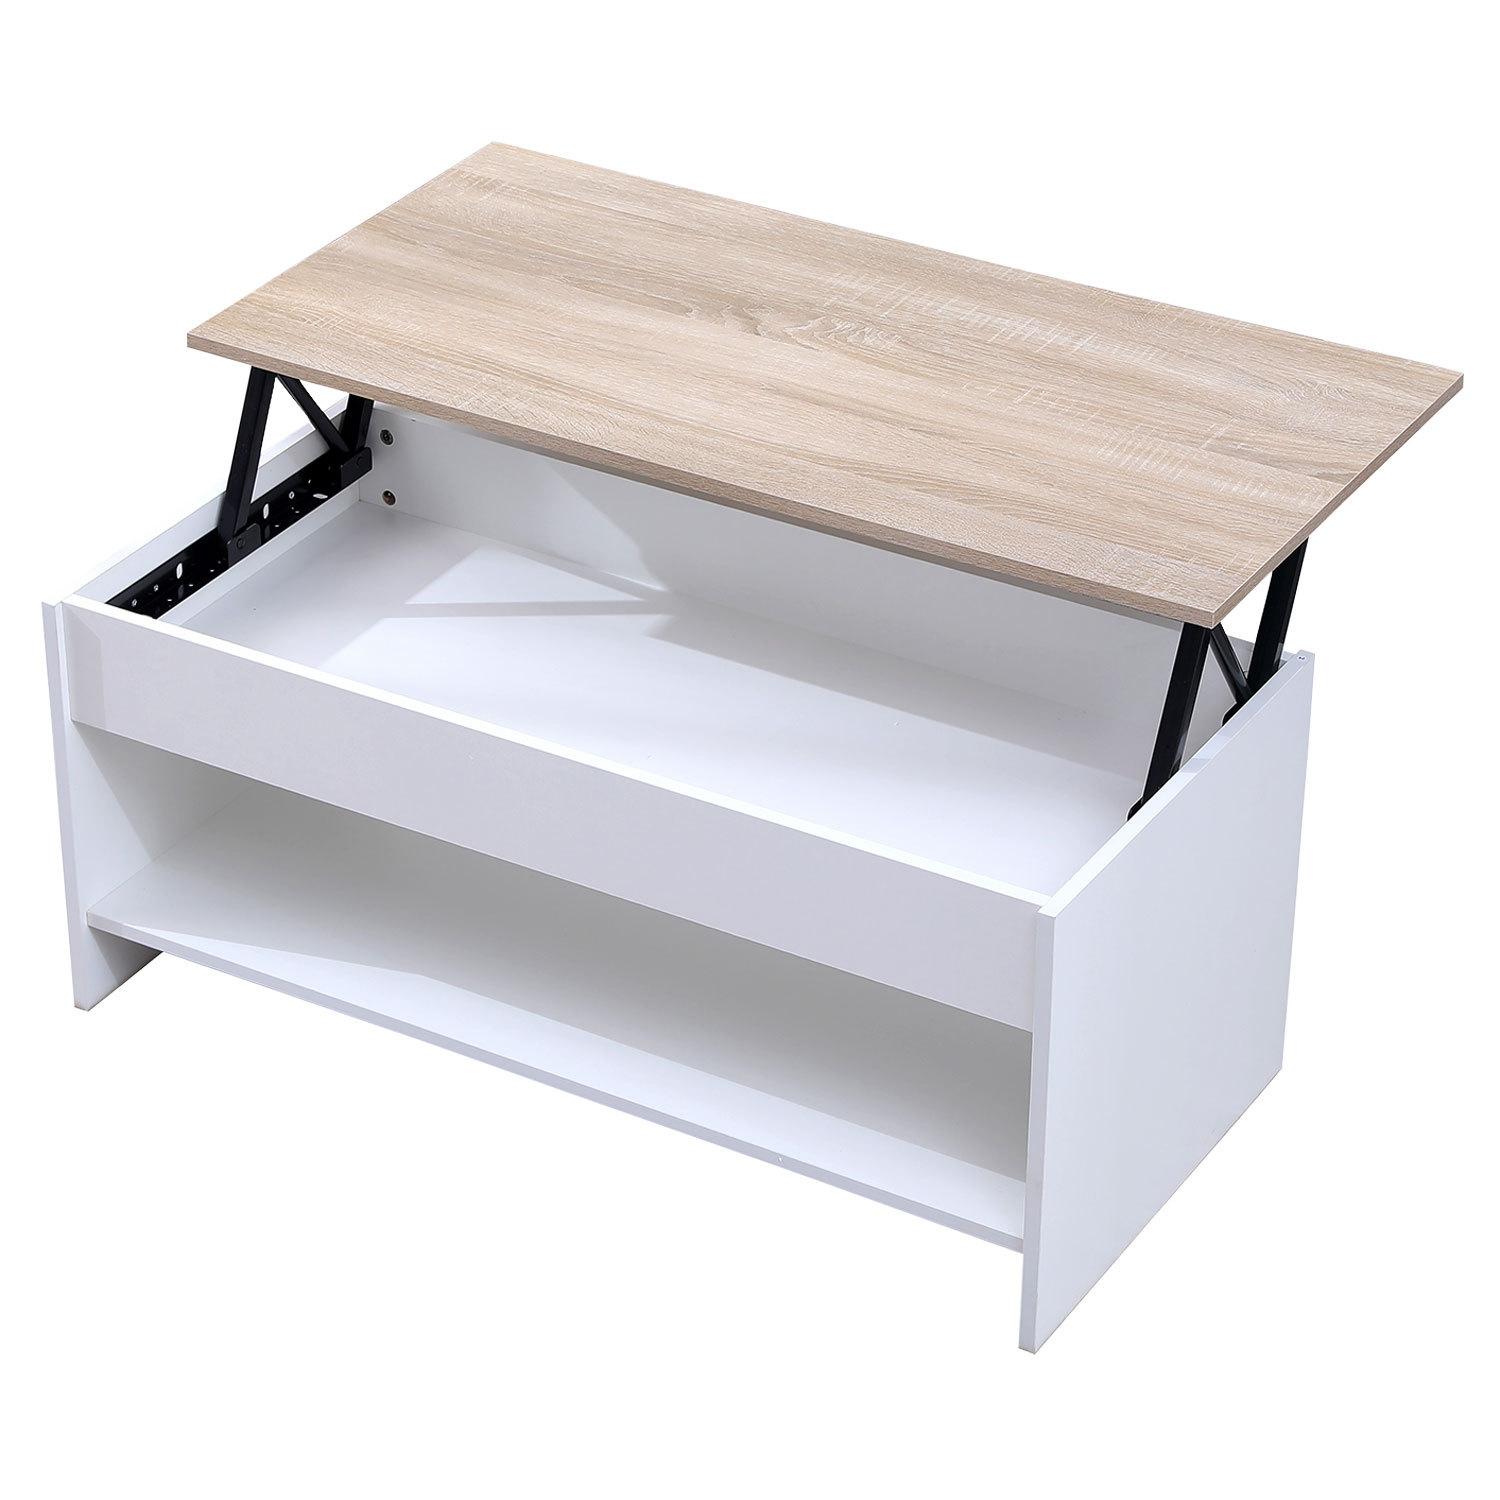 Mesa baja con tapa elevable blanca y madera HEDDA